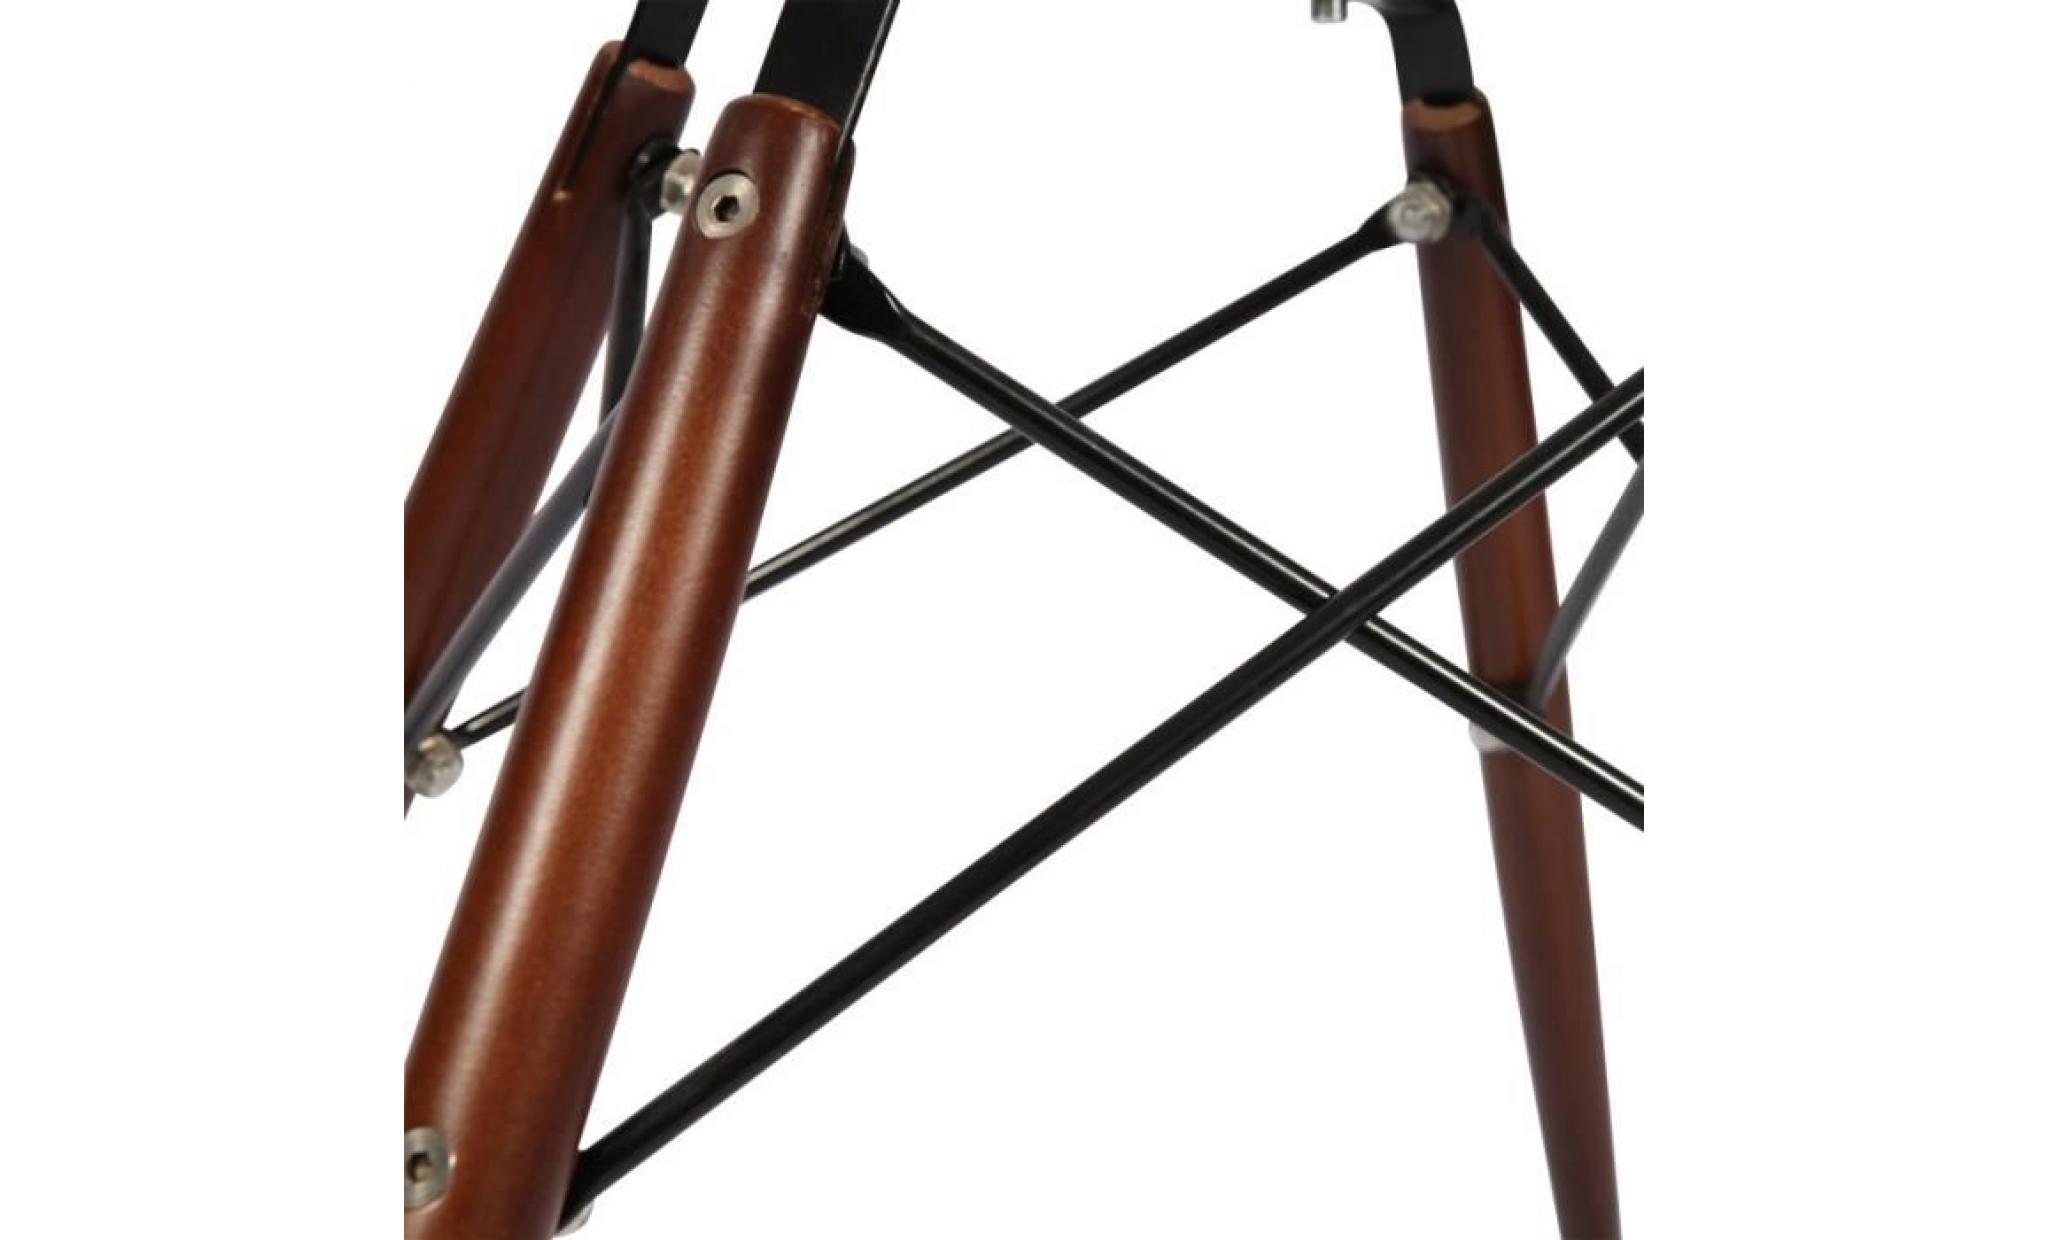 1 x fauteuil design retro style eames daw hauteur 48cm pieds en bois vernis noyer assise bordeaux mobistyl® pas cher